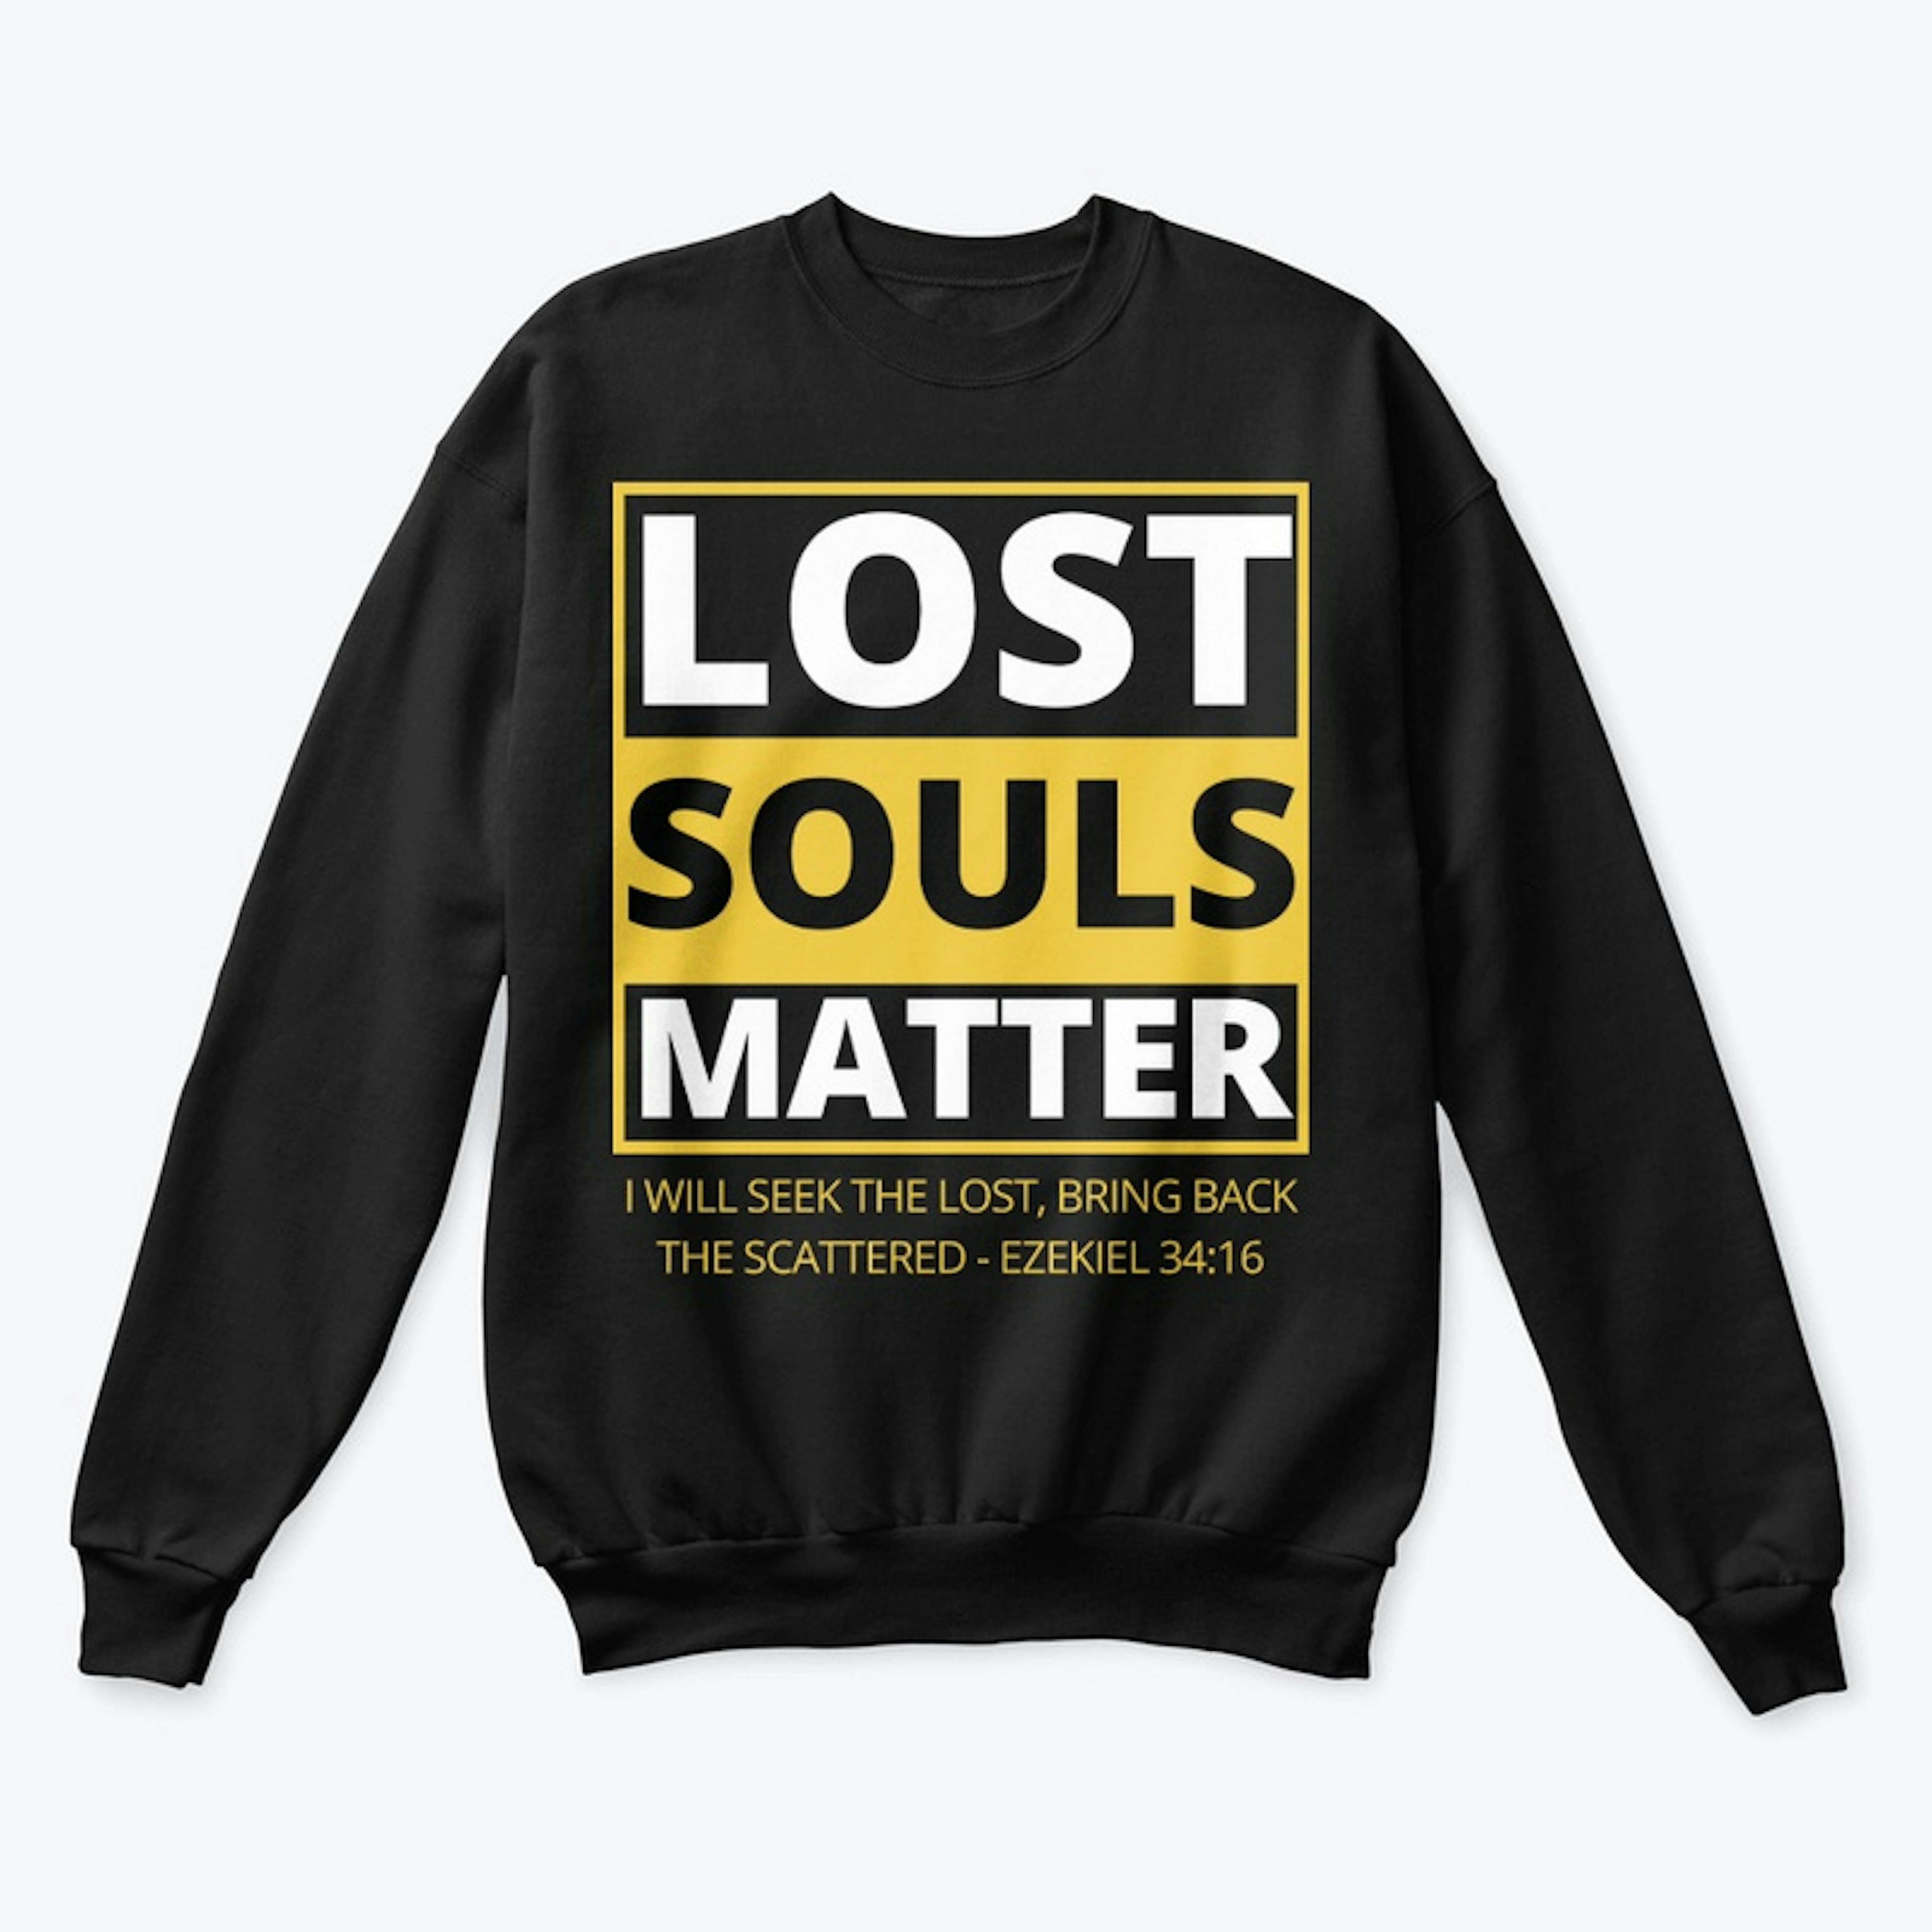 00031: Stylish Lost Souls Matter